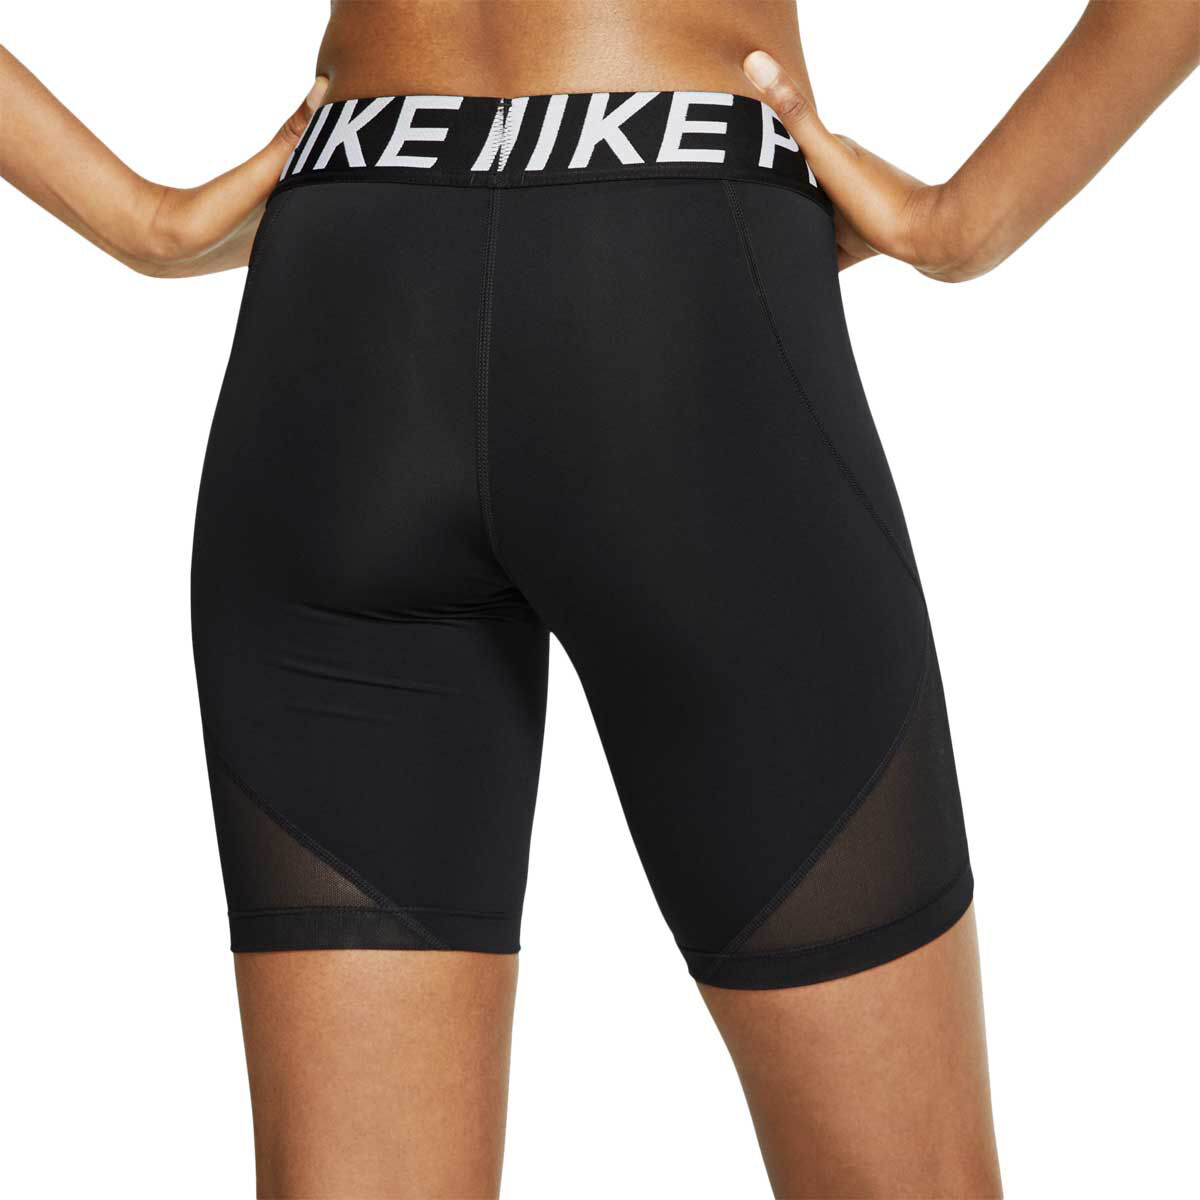 nike pro shorts women's 7 inch